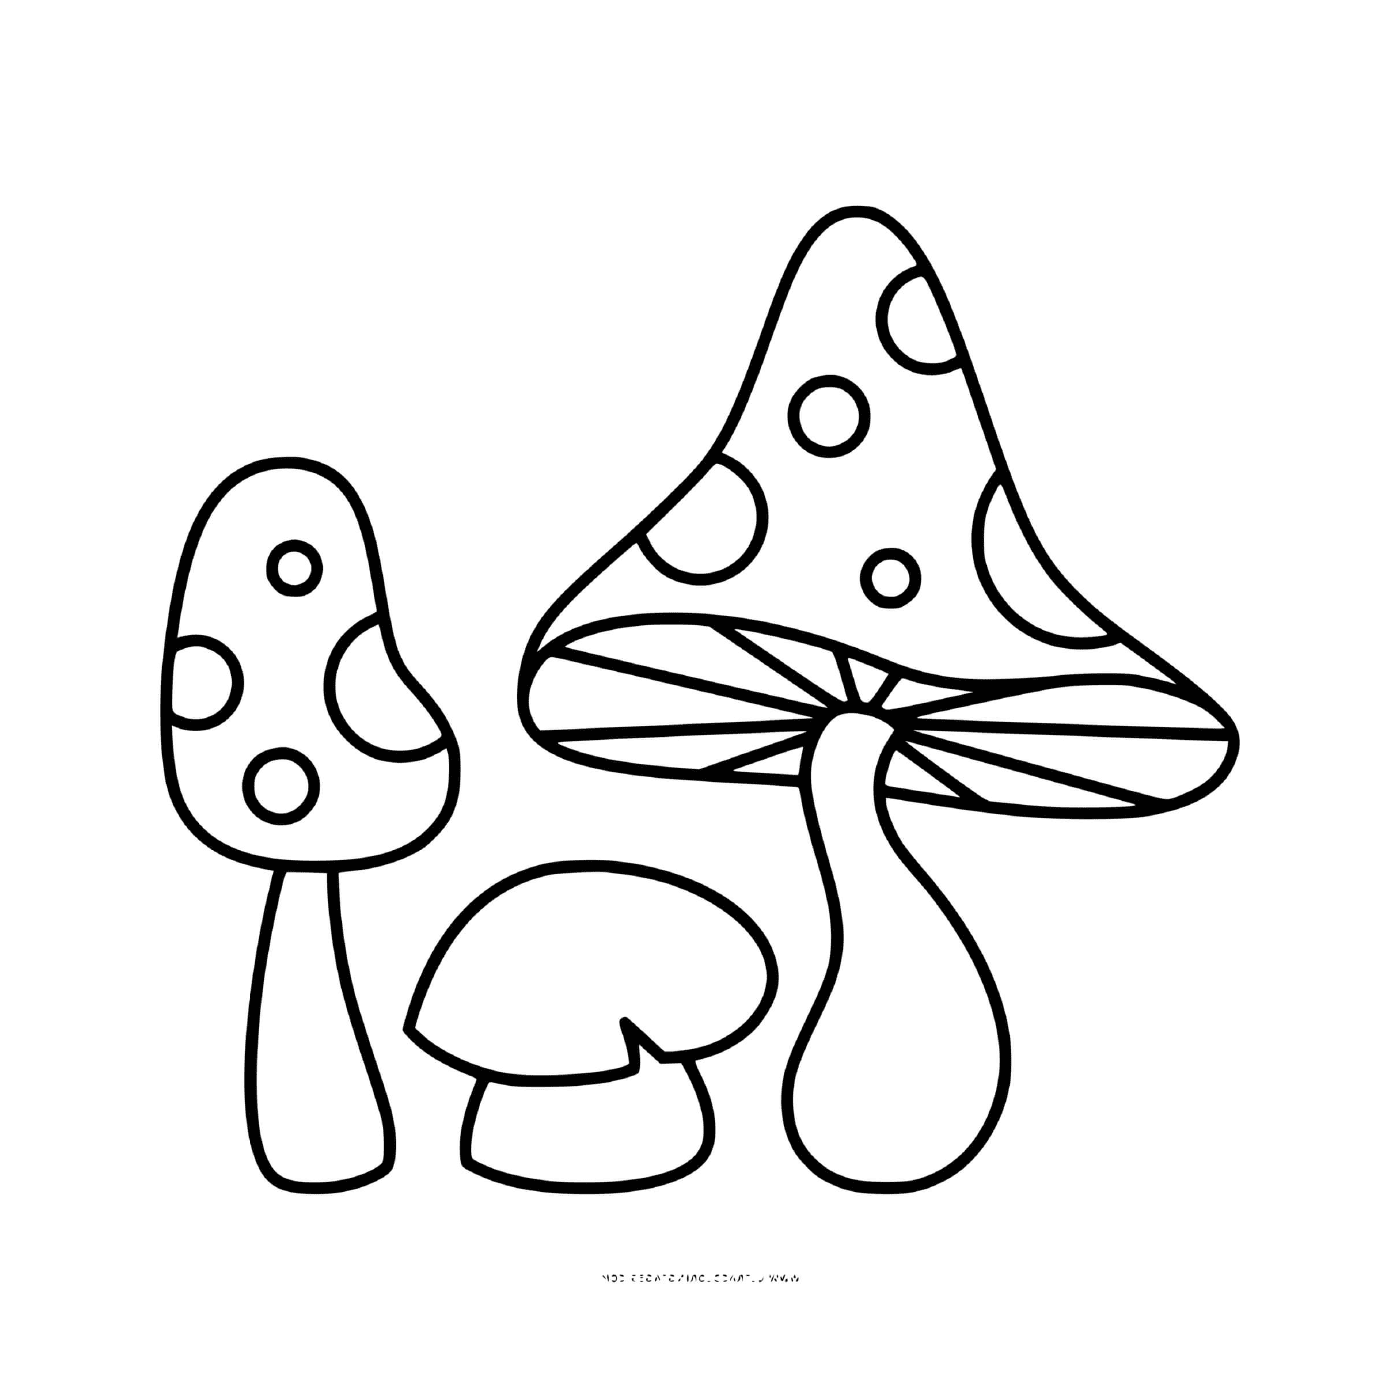 champignon amanite jonquille